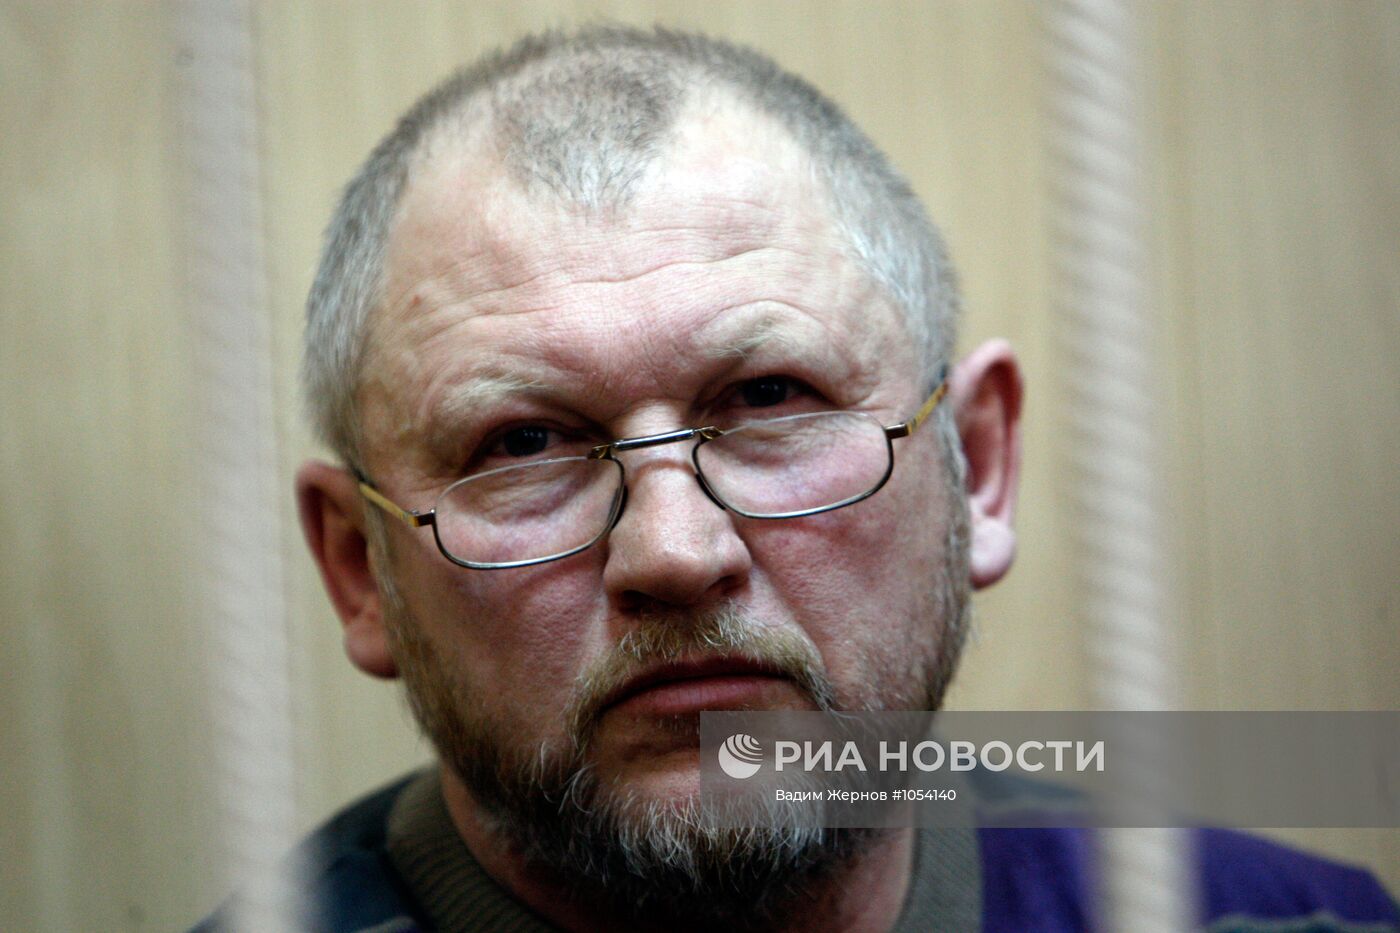 Оглашение приговора Михаилу Глущенко